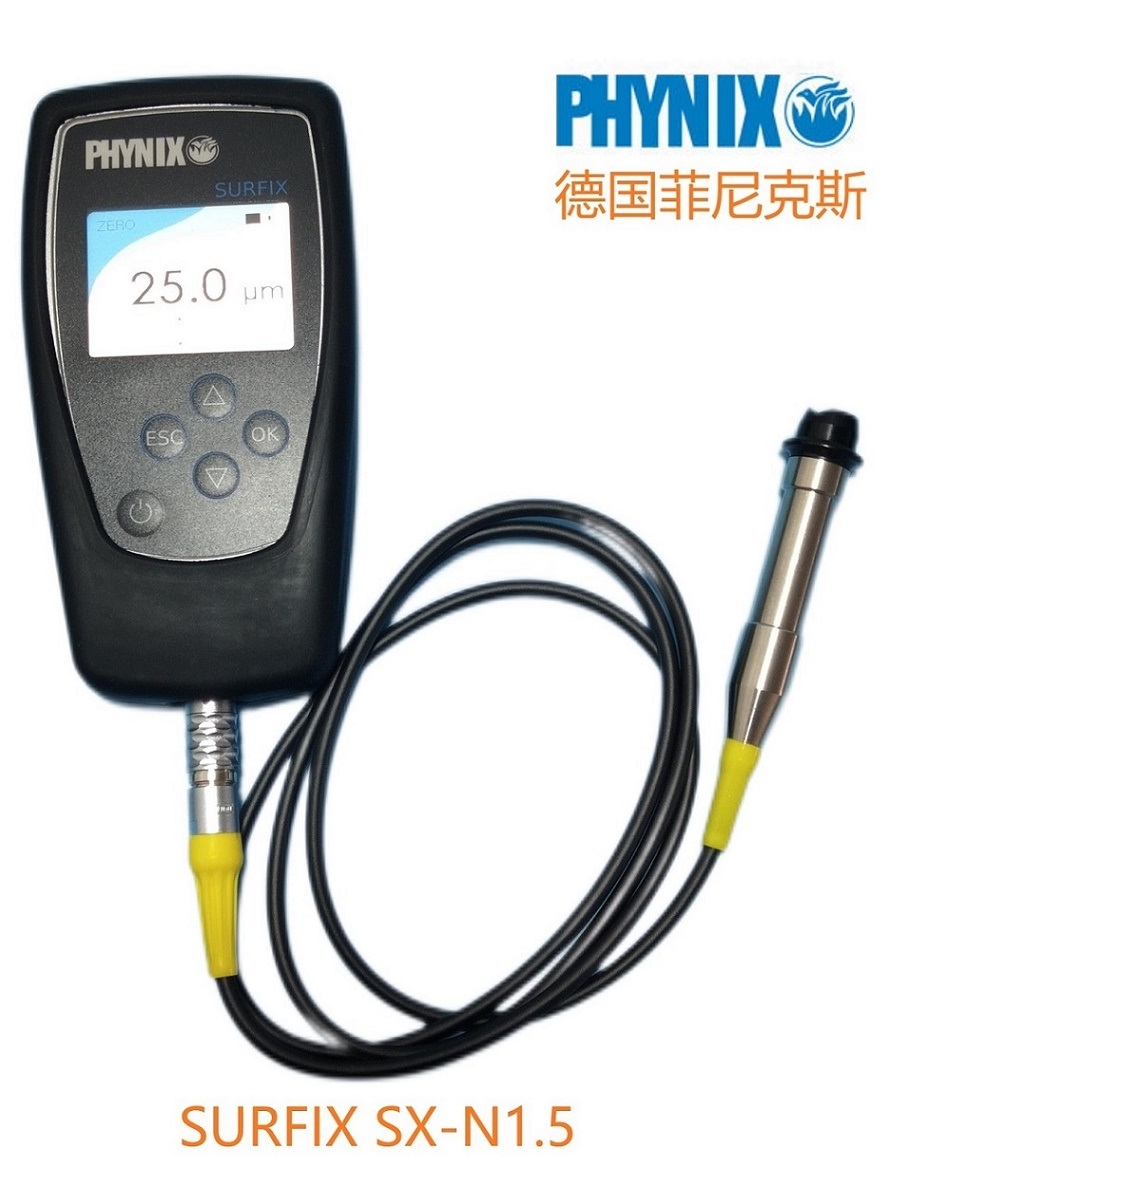 德国菲尼克斯SURFIX SX-N1.5漆膜测厚仪